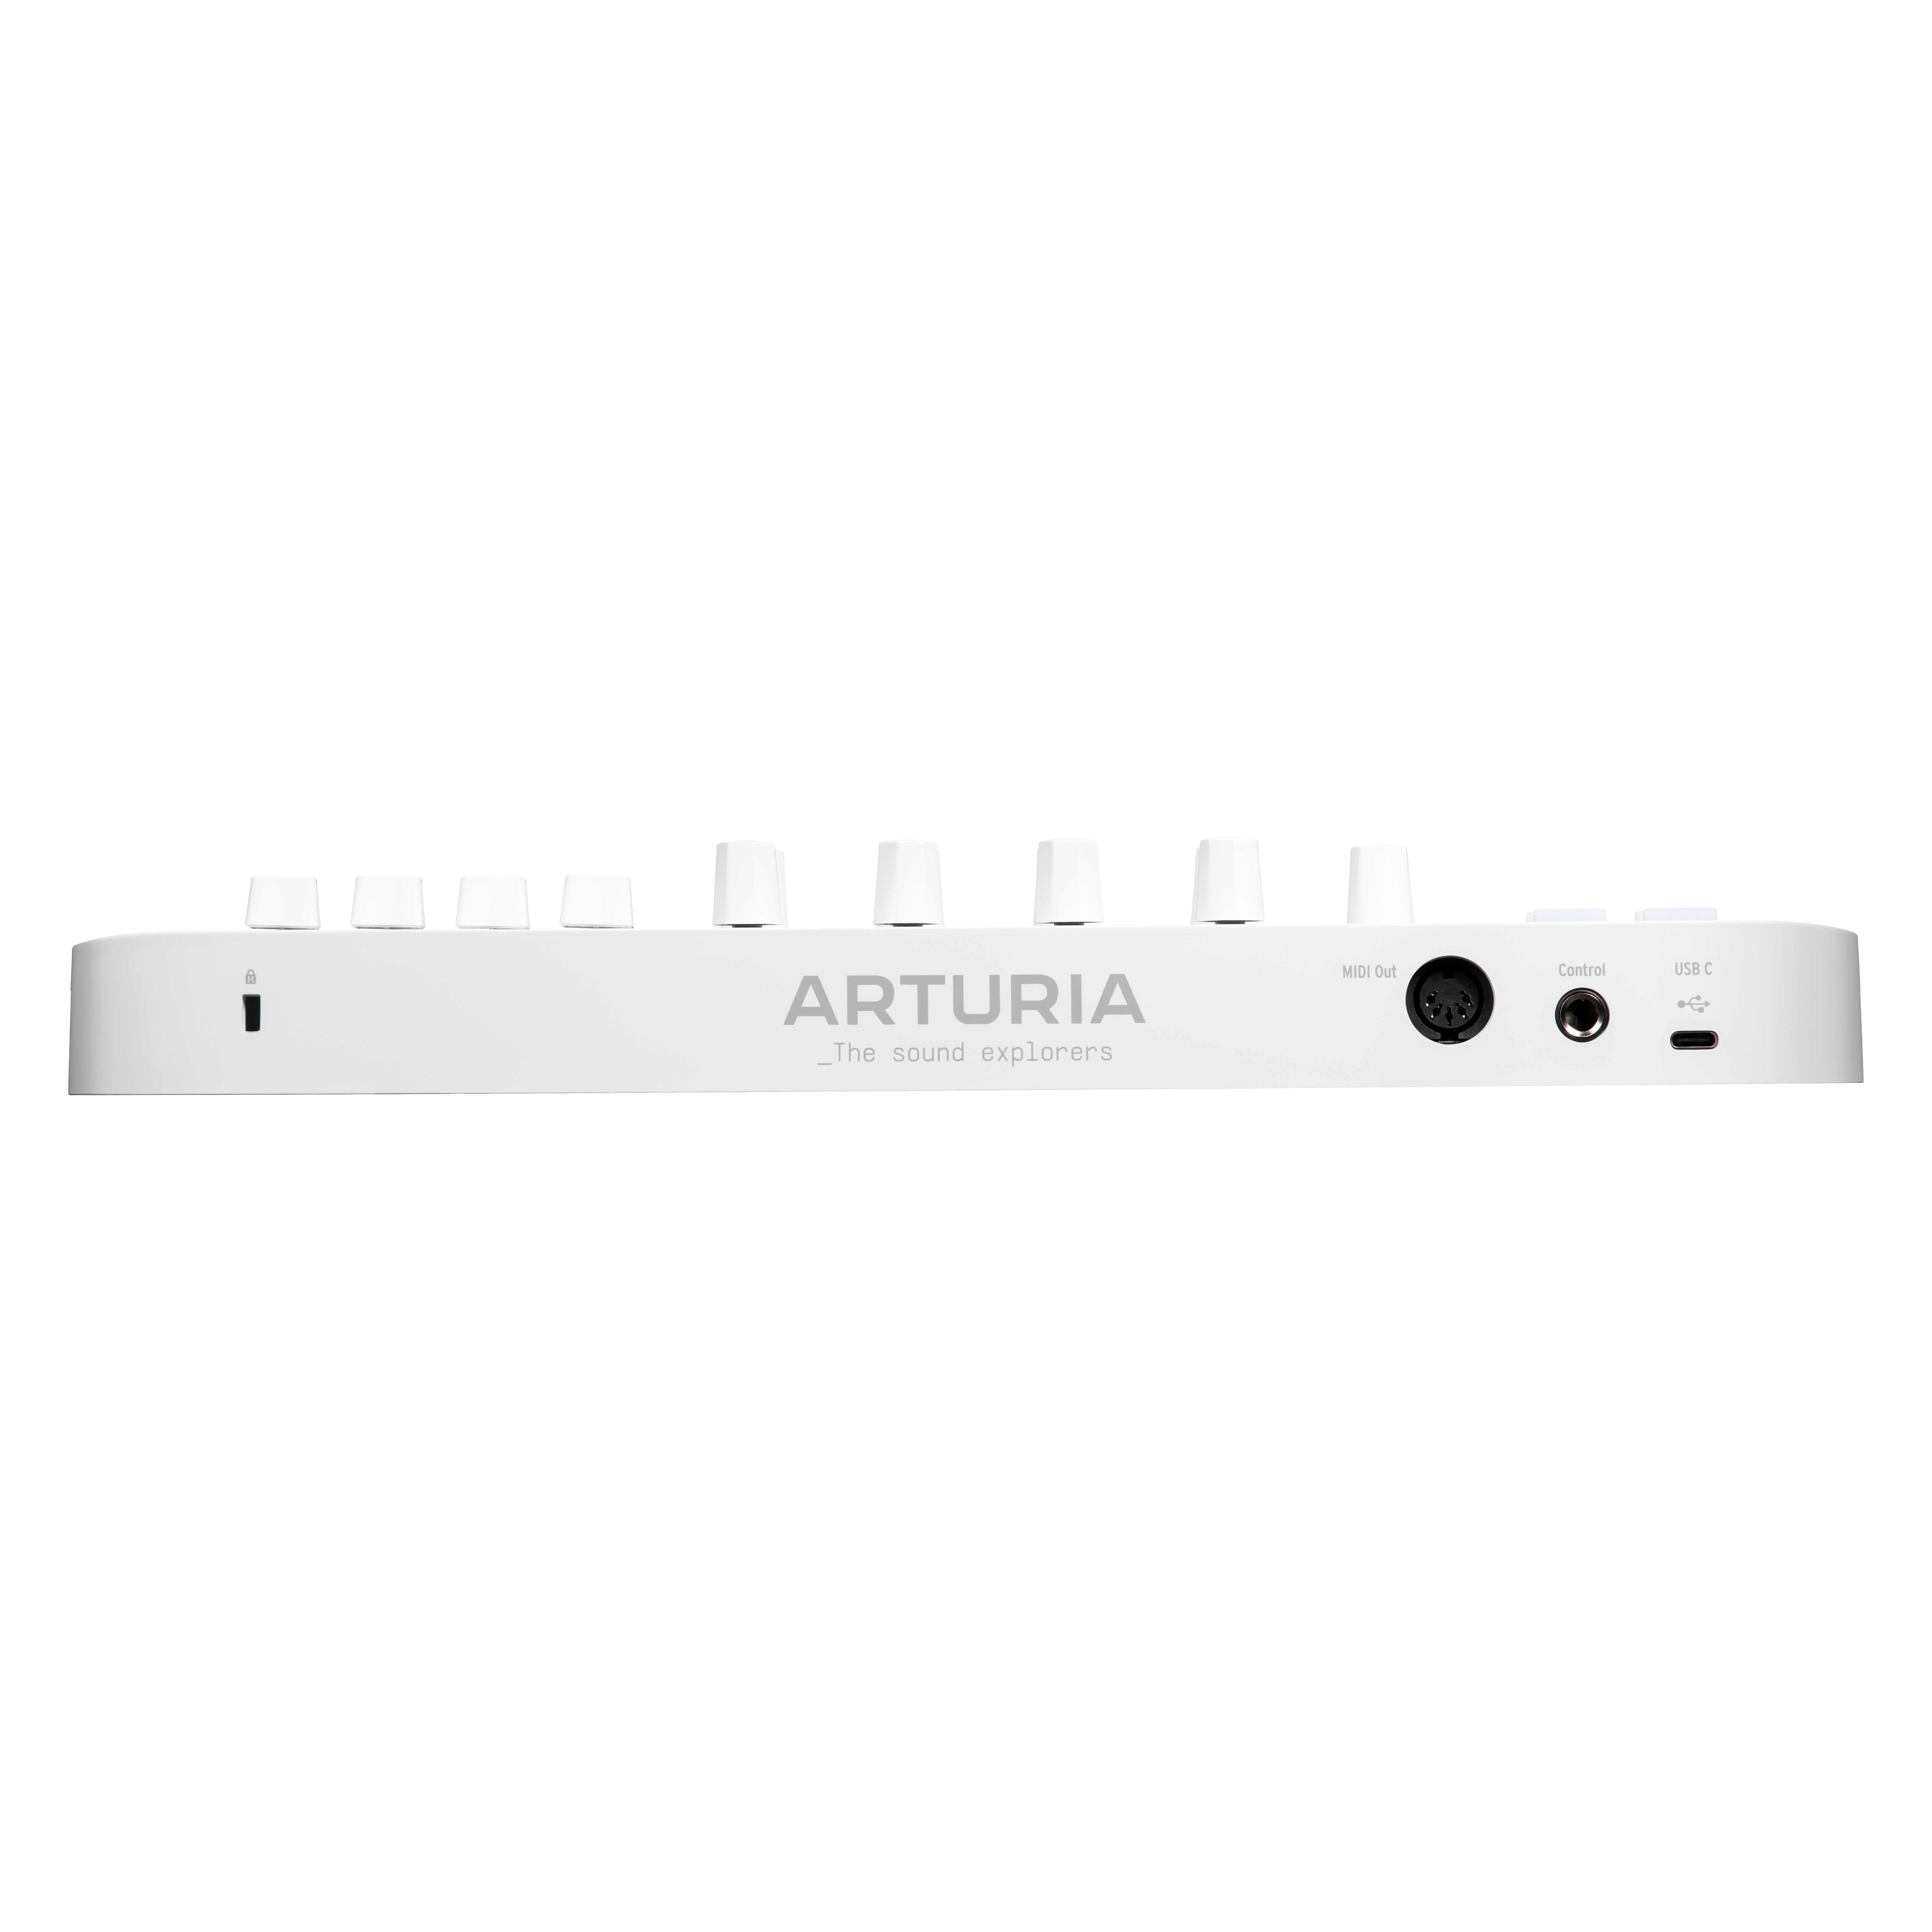 Arturia Minilab 3 Alpine White Limited Edition | guitarguitar